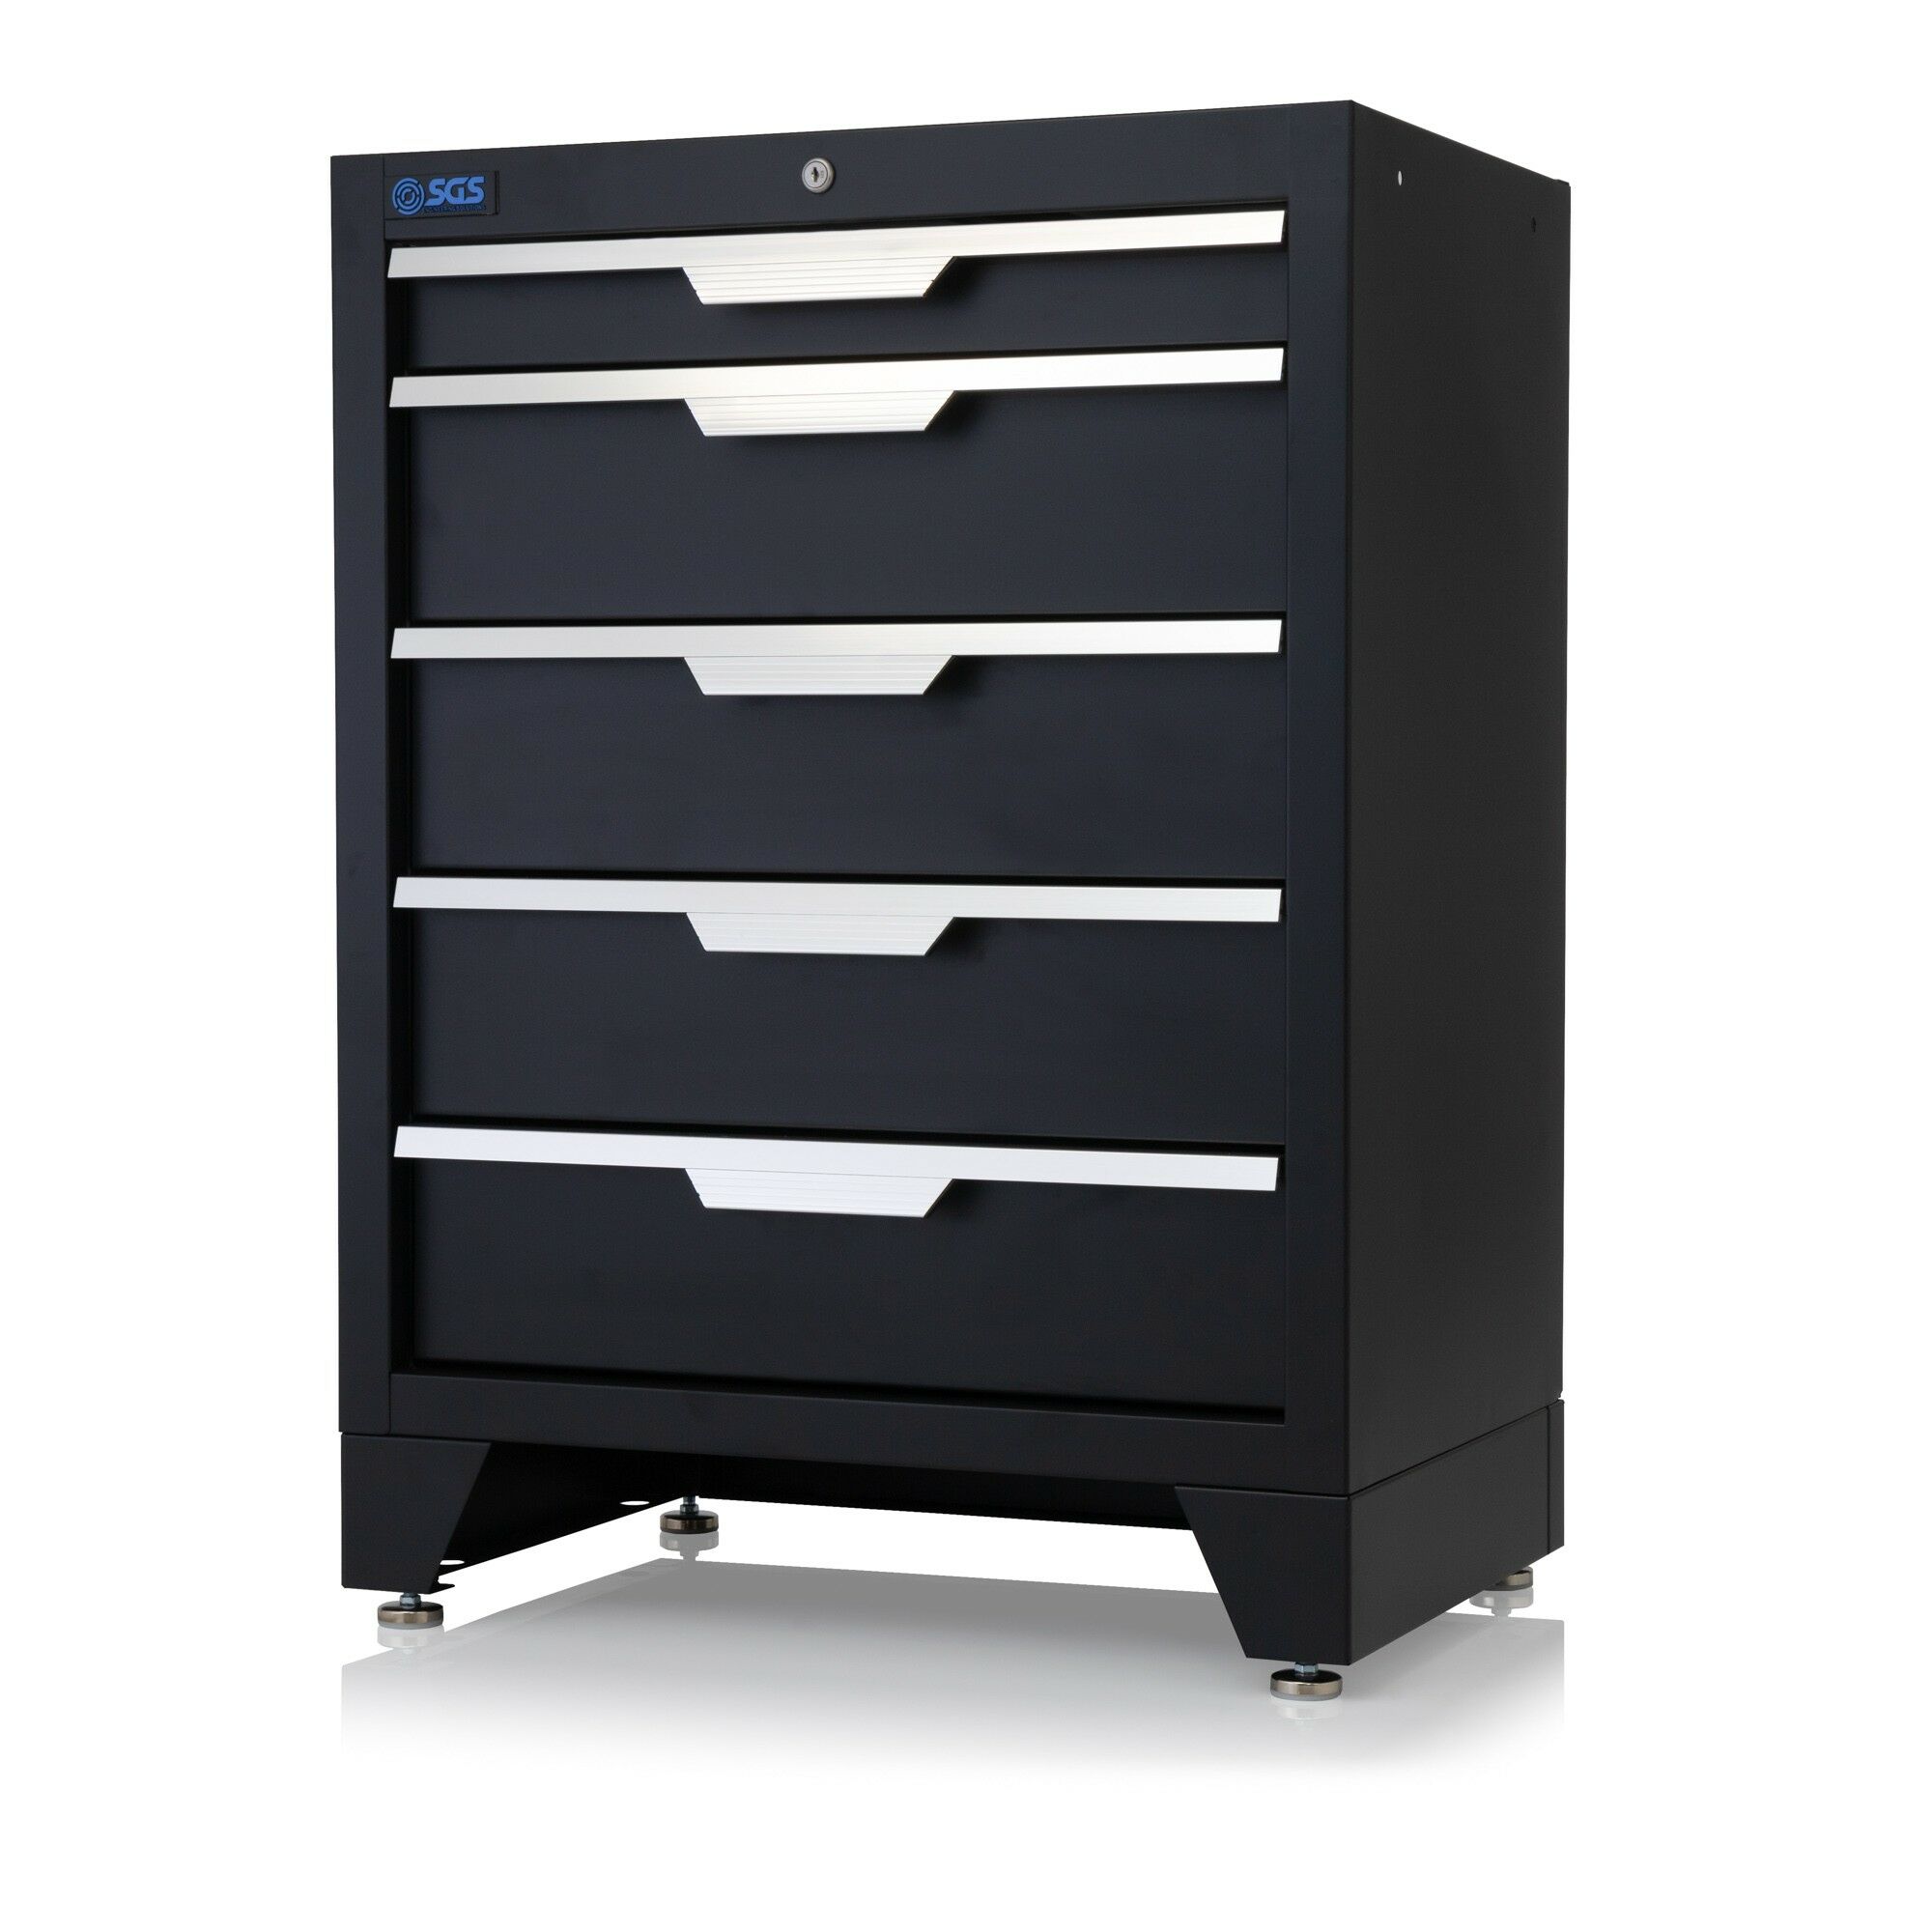 SGS Garage System 5 Drawer Cabinet